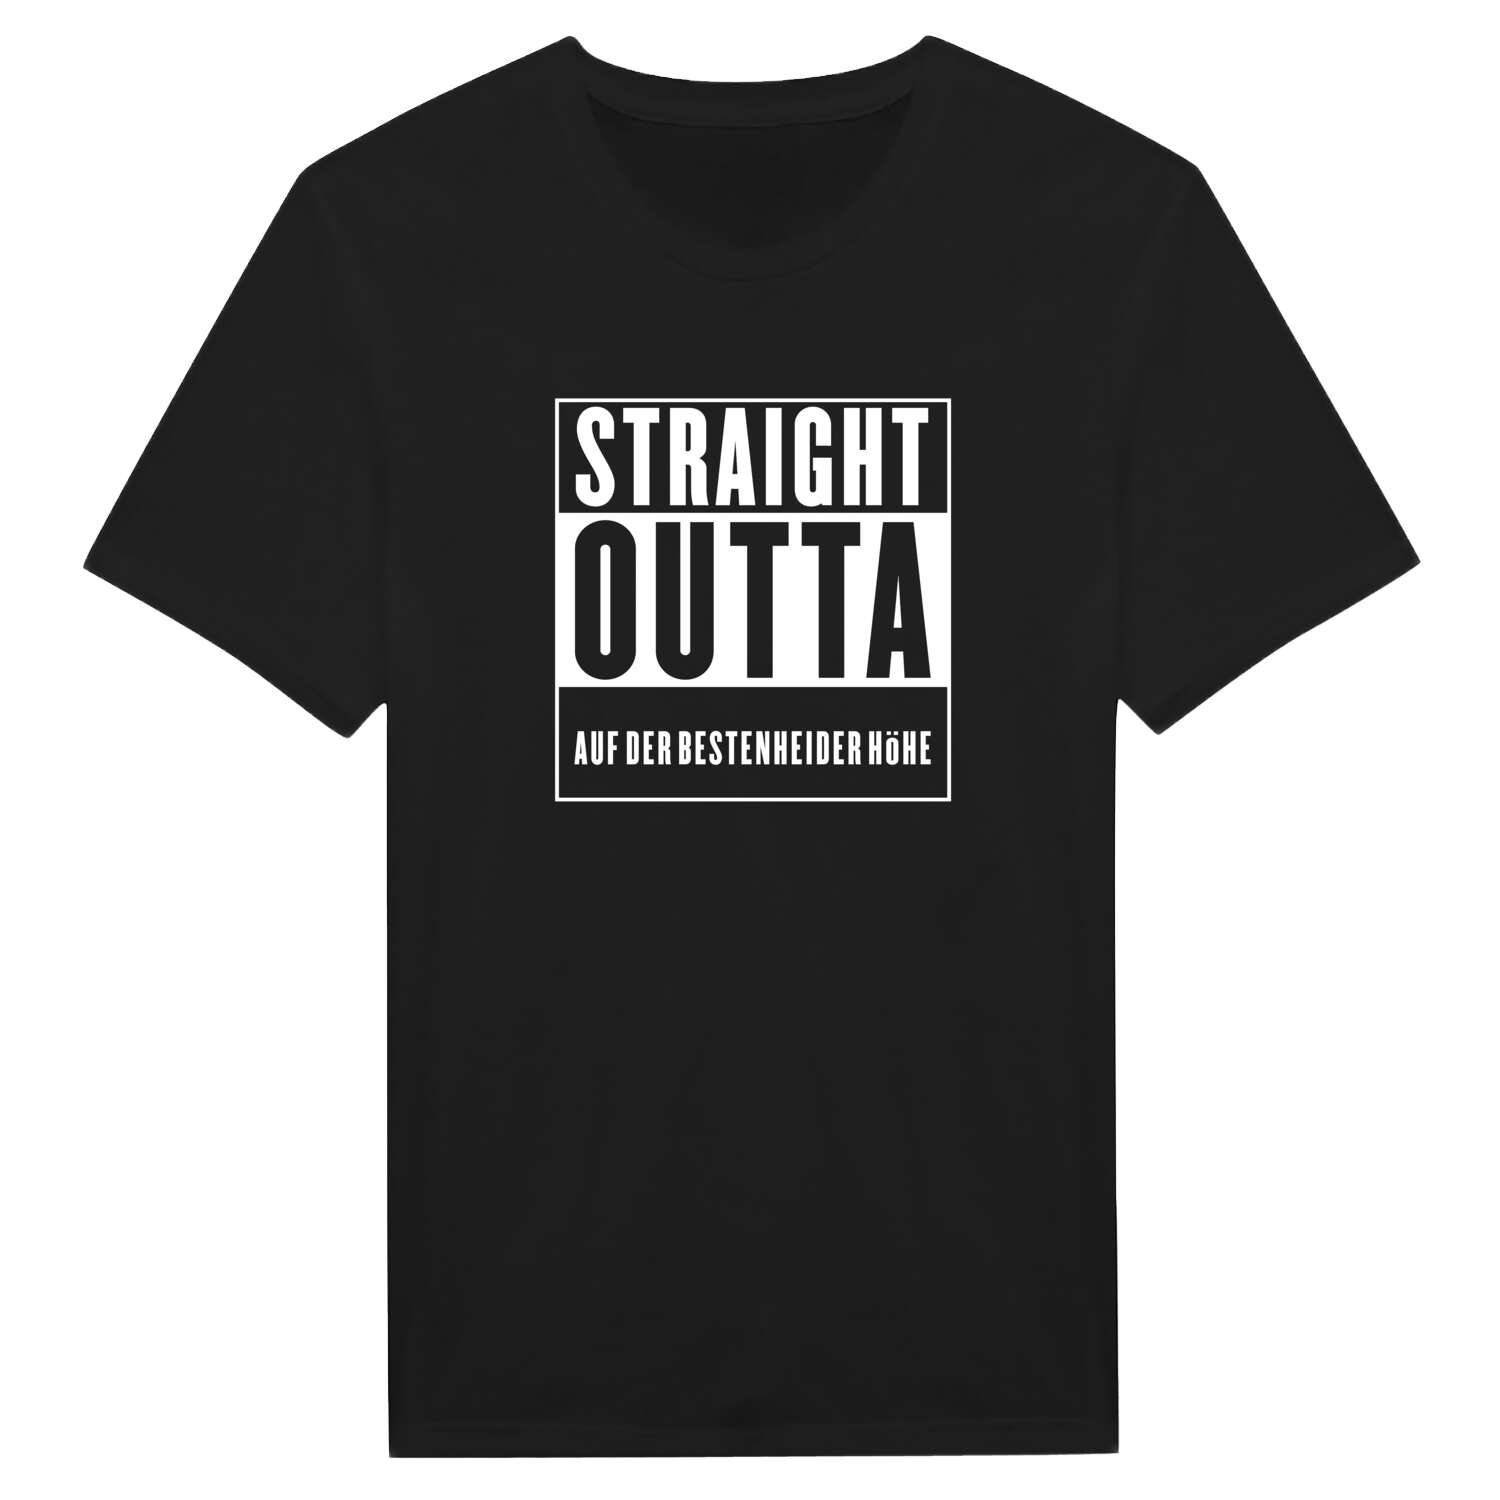 Auf der Bestenheider Höhe T-Shirt »Straight Outta«